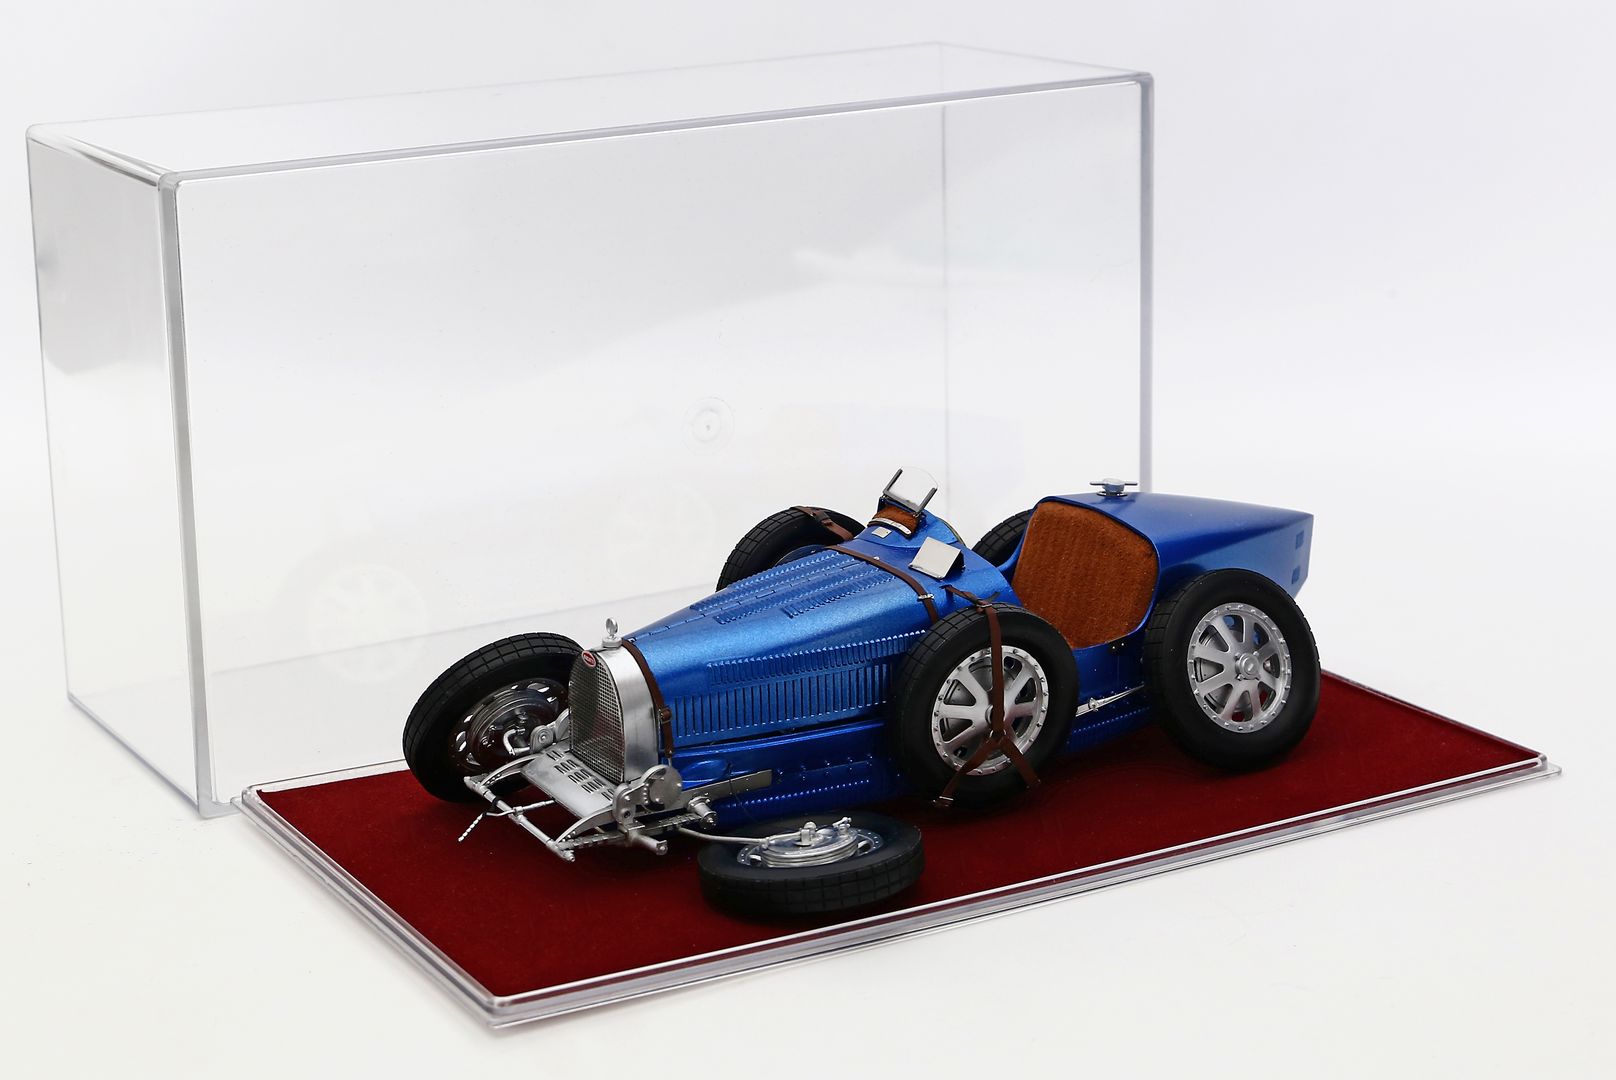 Modellauto "Bugatti", 1:12.